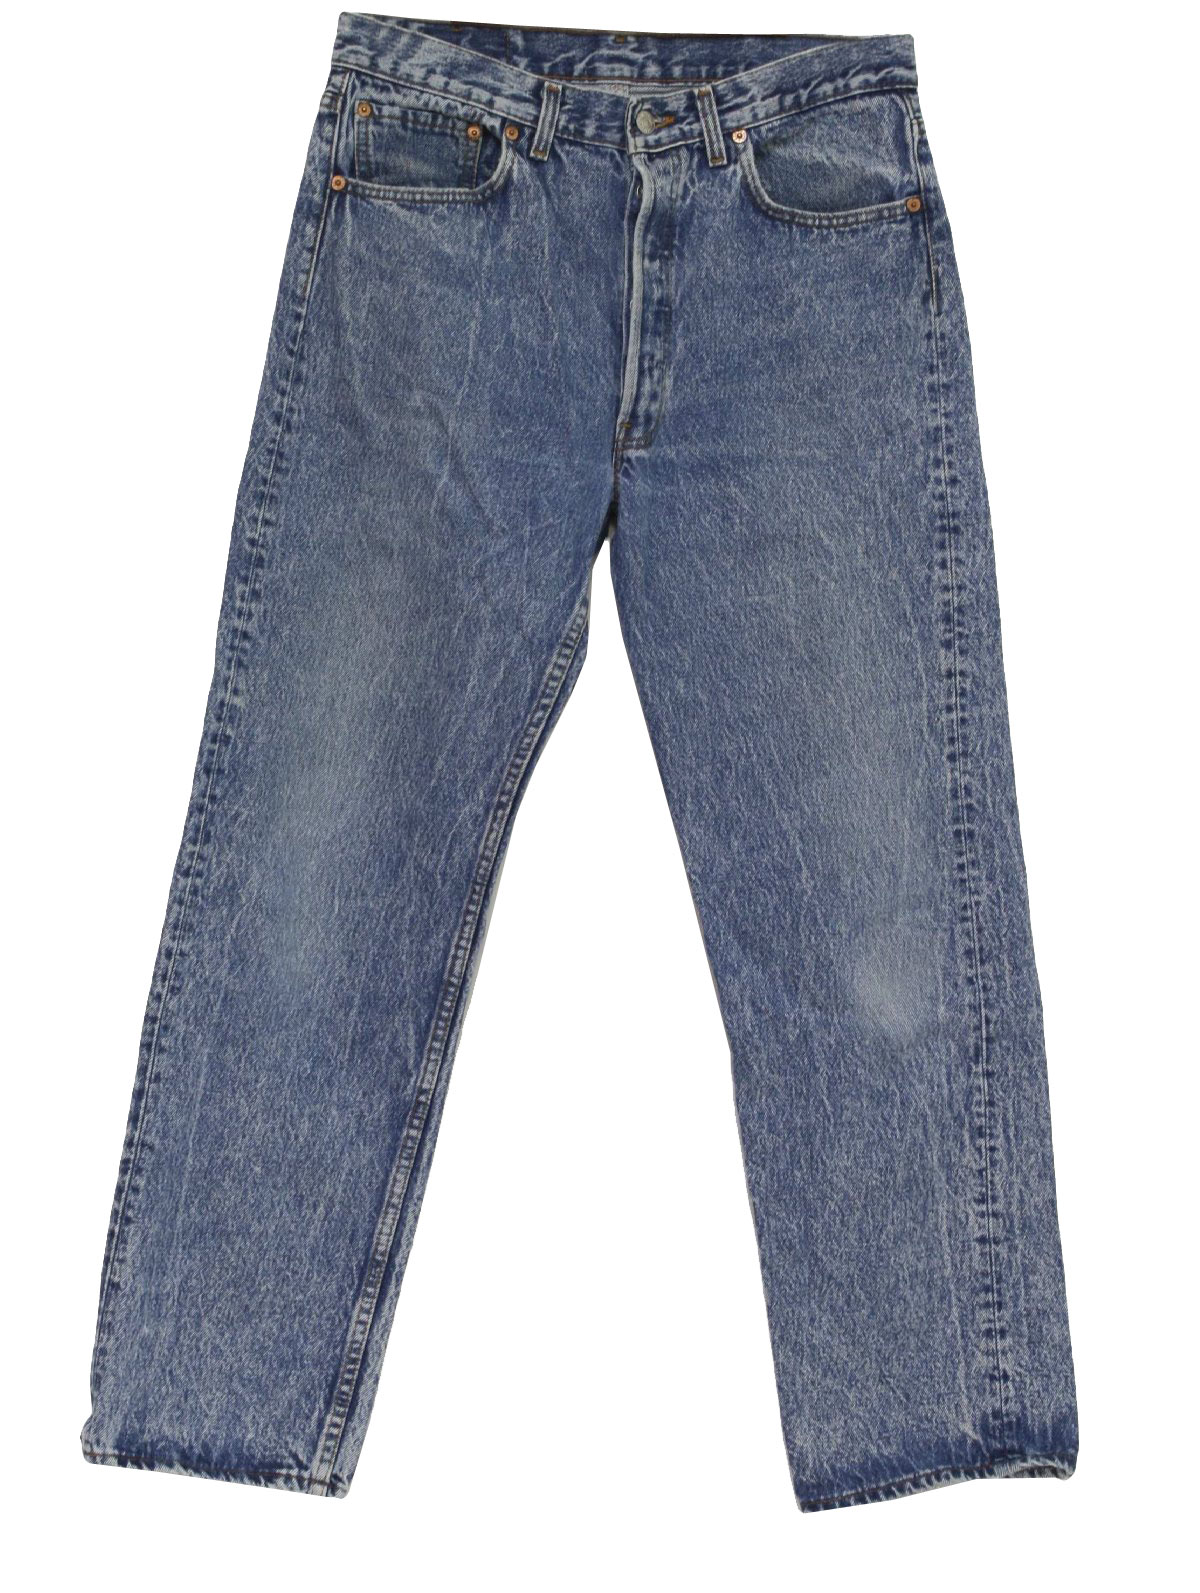 80s Vintage Levis Pants: 80s -Levis- Mens blue acid washed cotton denim ...